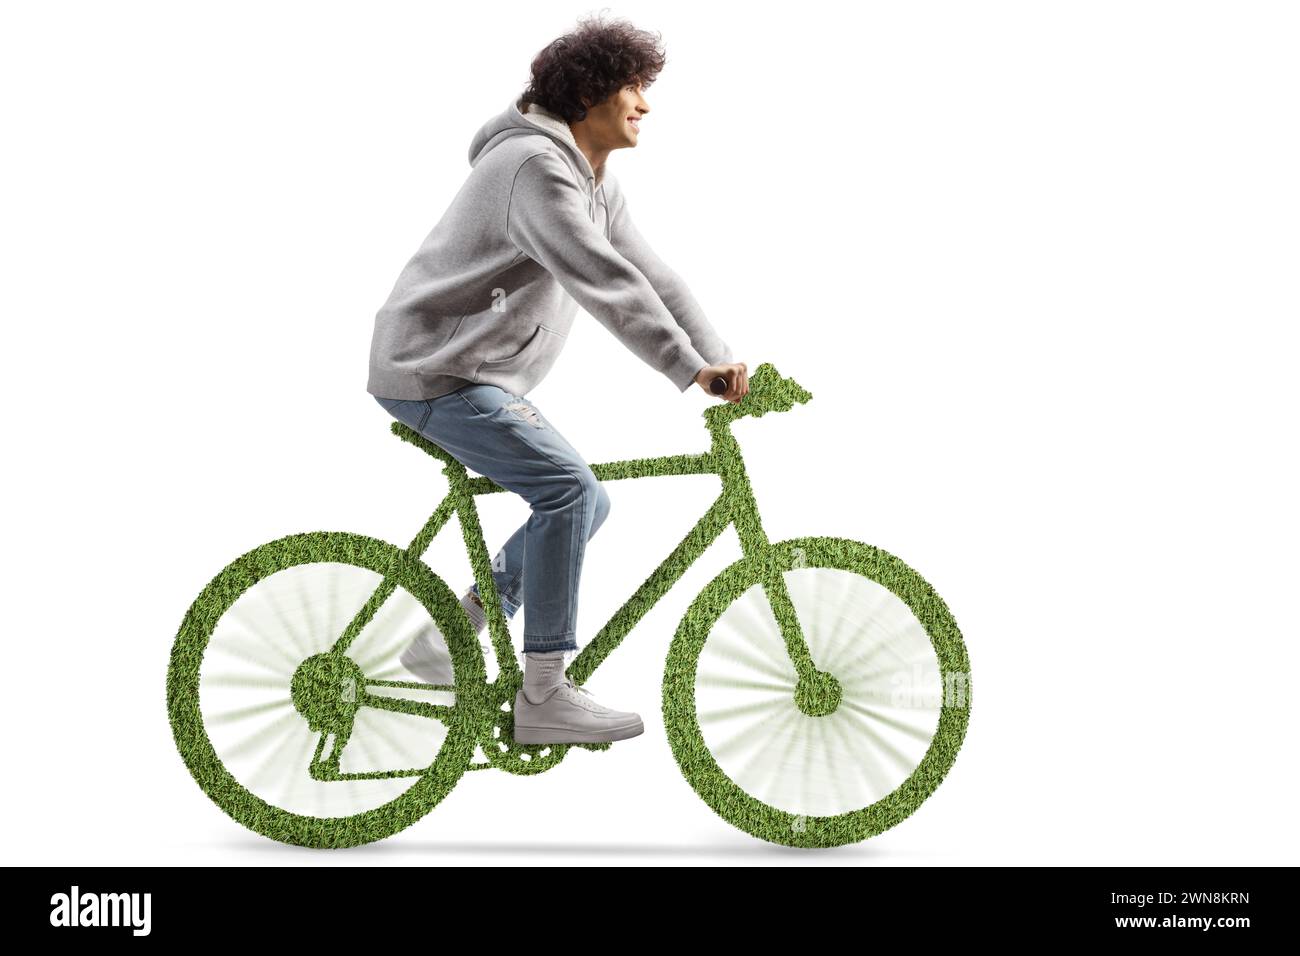 Ein Typ, der ein grünes umweltfreundliches Fahrrad fährt, isoliert auf weißem Hintergrund Stockfoto